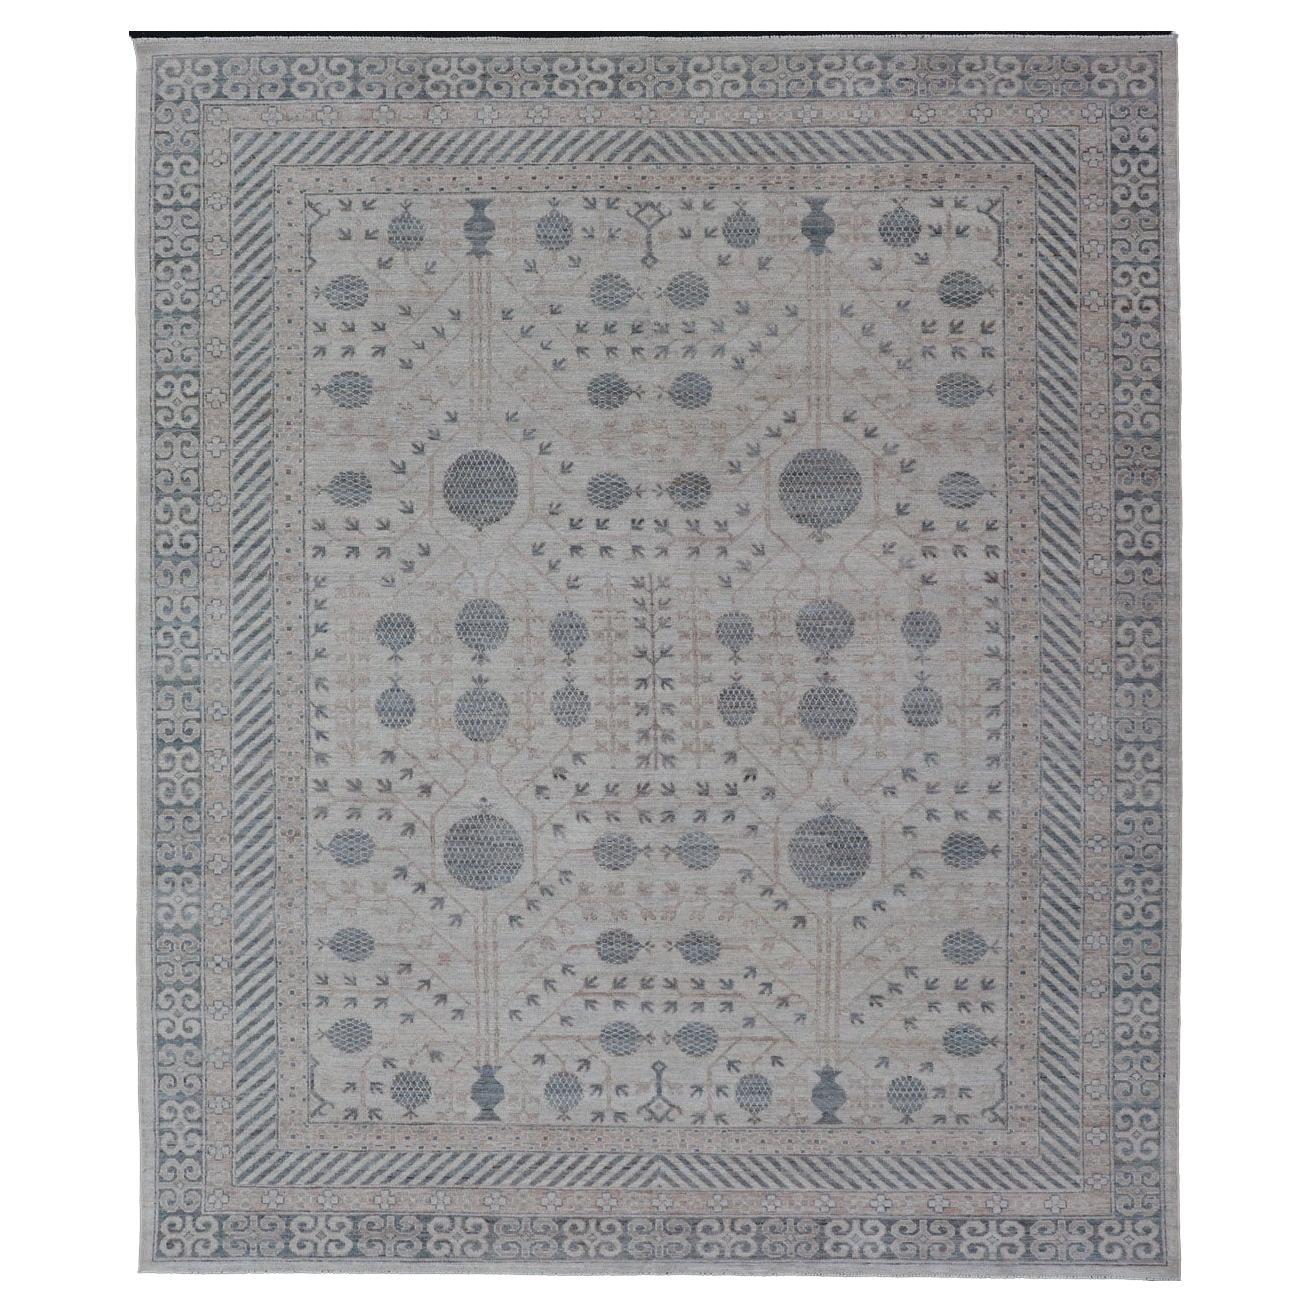 Moderner Khotan-Teppich im modernen Stammesstil in den Farben Creme, Hellbraun und Hellblau